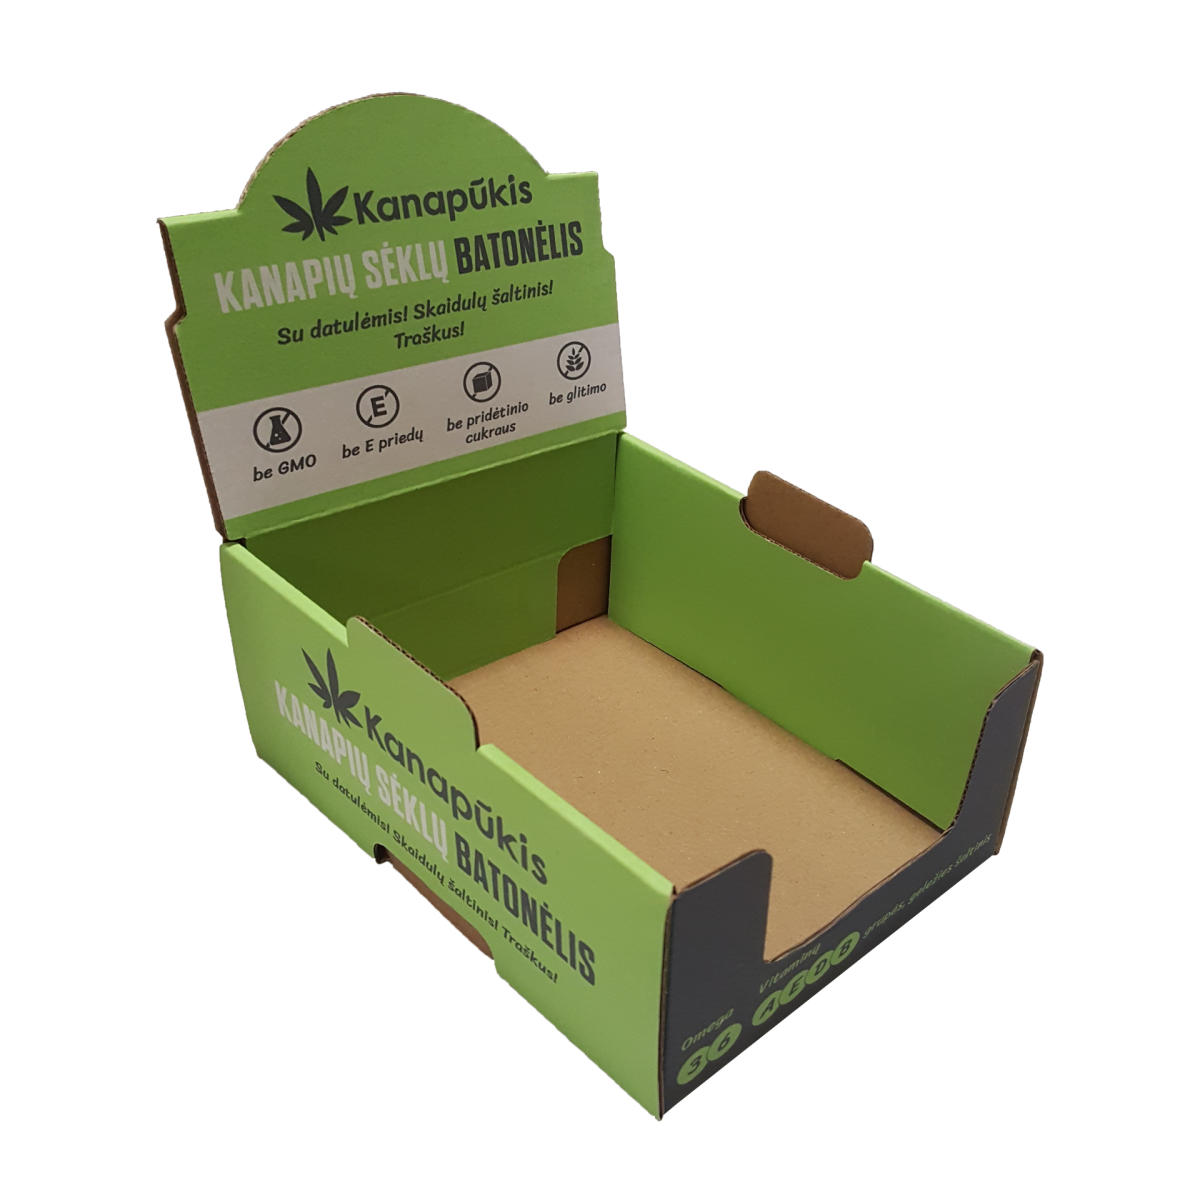 Atvira žalia dėžutė su informacija